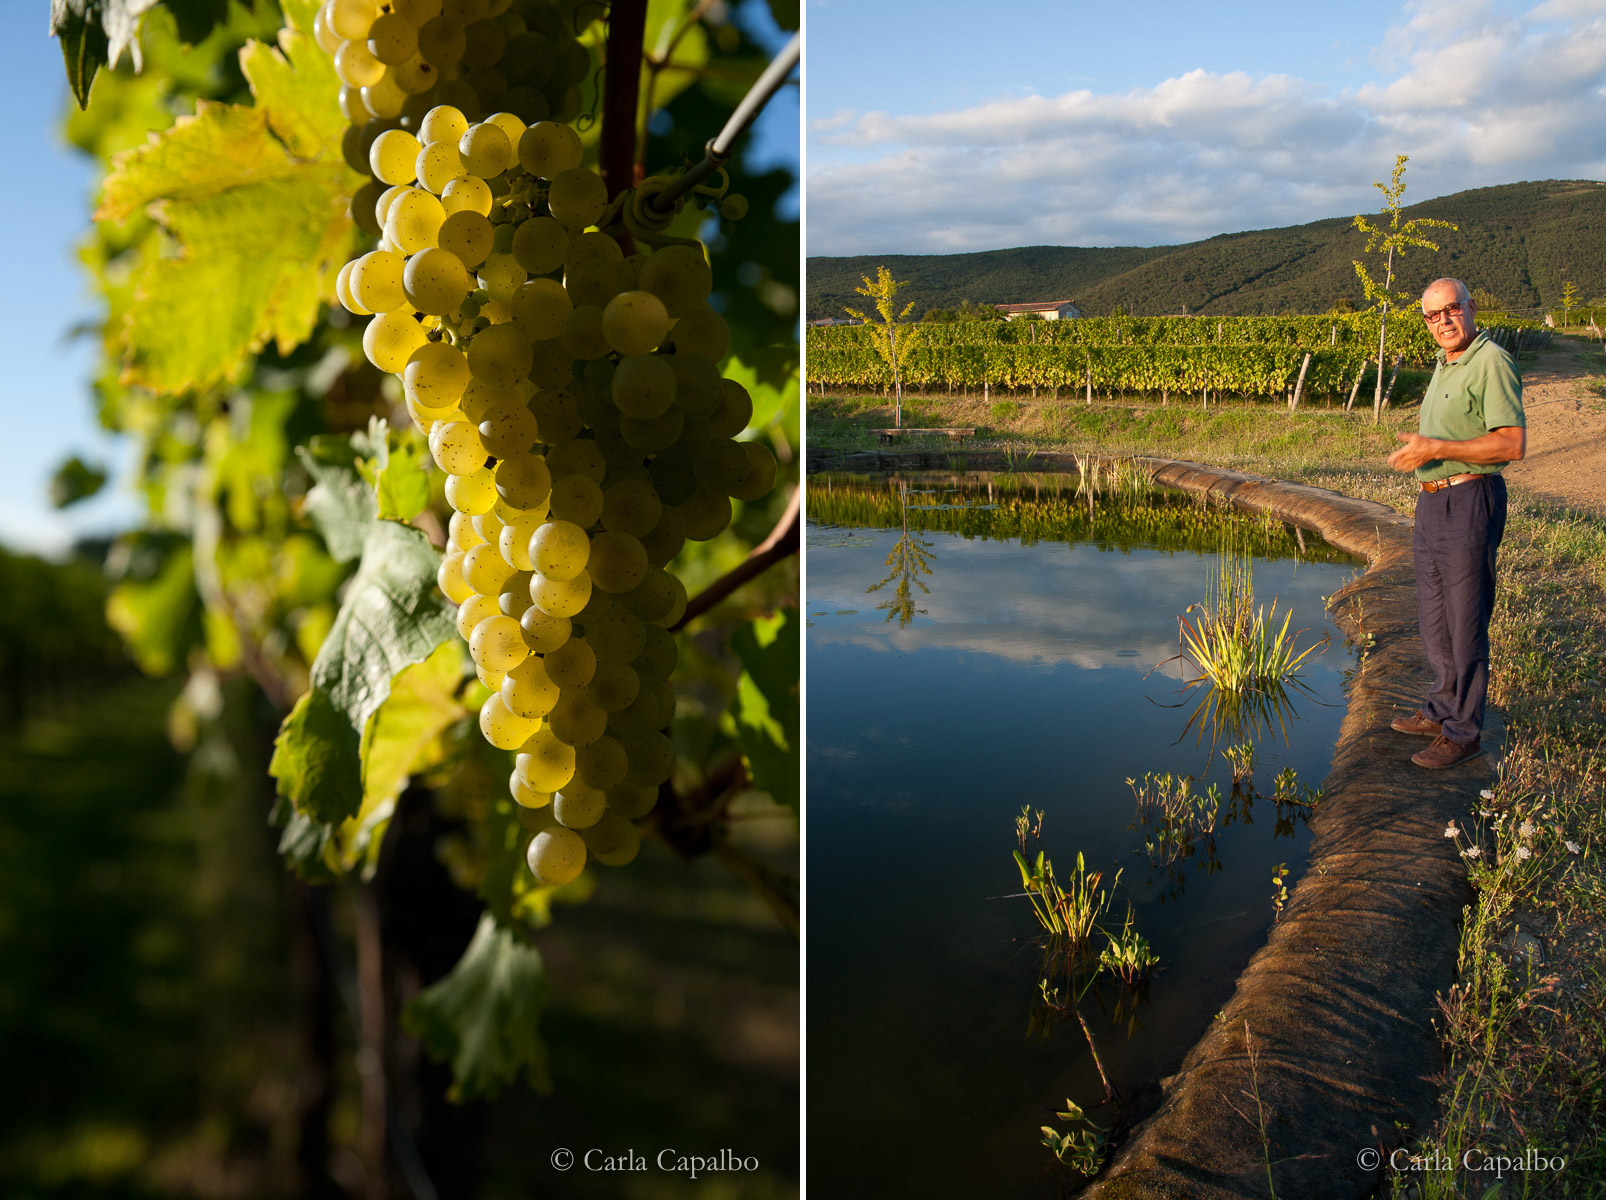 Friulano grapes at Renato Keber, Collio · Josko Gravner and his vineyard pond, Collio